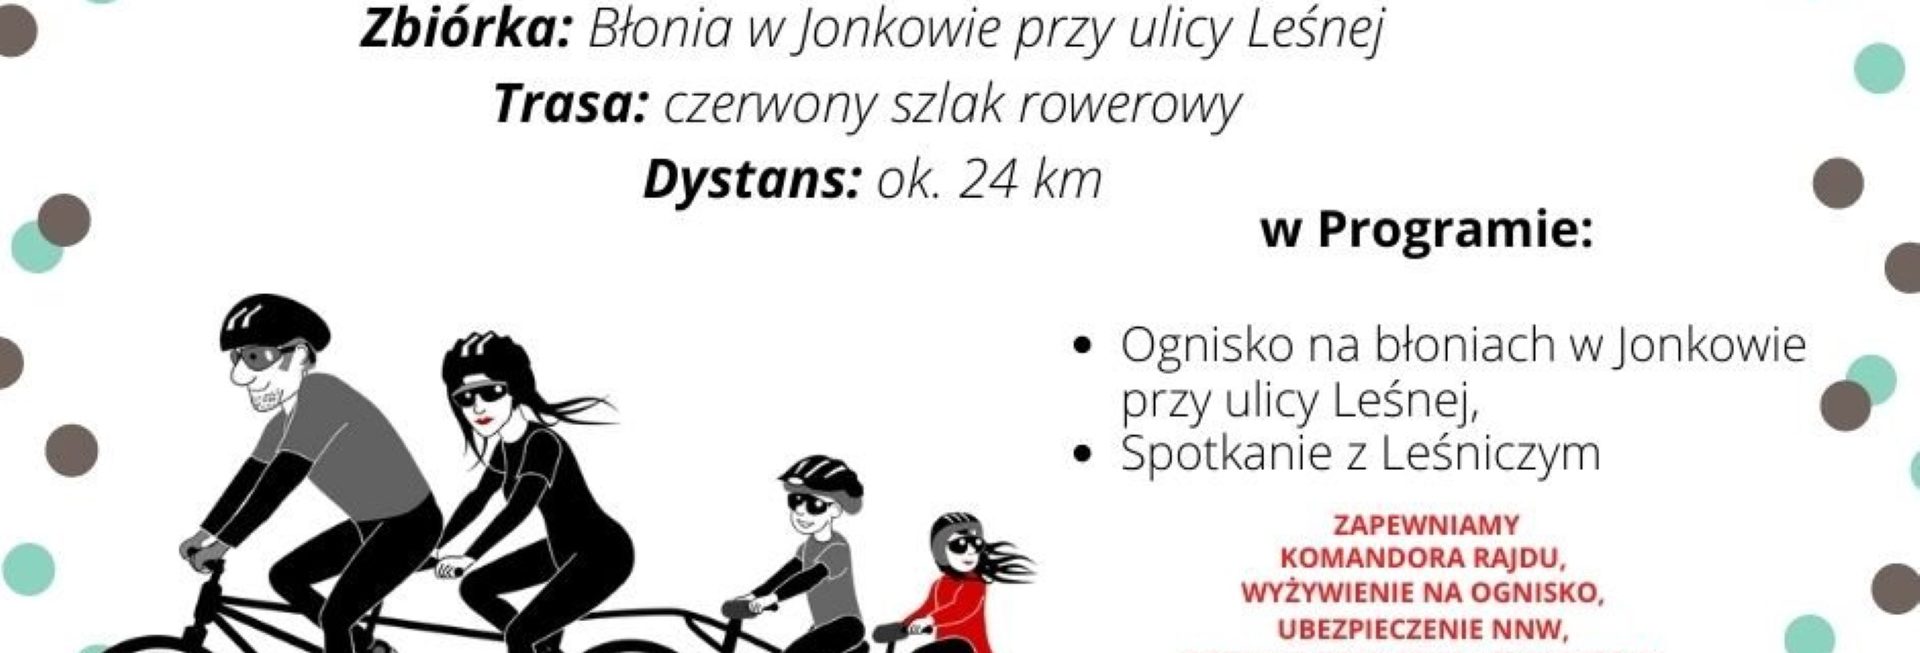 Plakat zapraszający do Jonkowa na rajd rowerowy "Nakręć się na EKO" Jonkowo 2022.